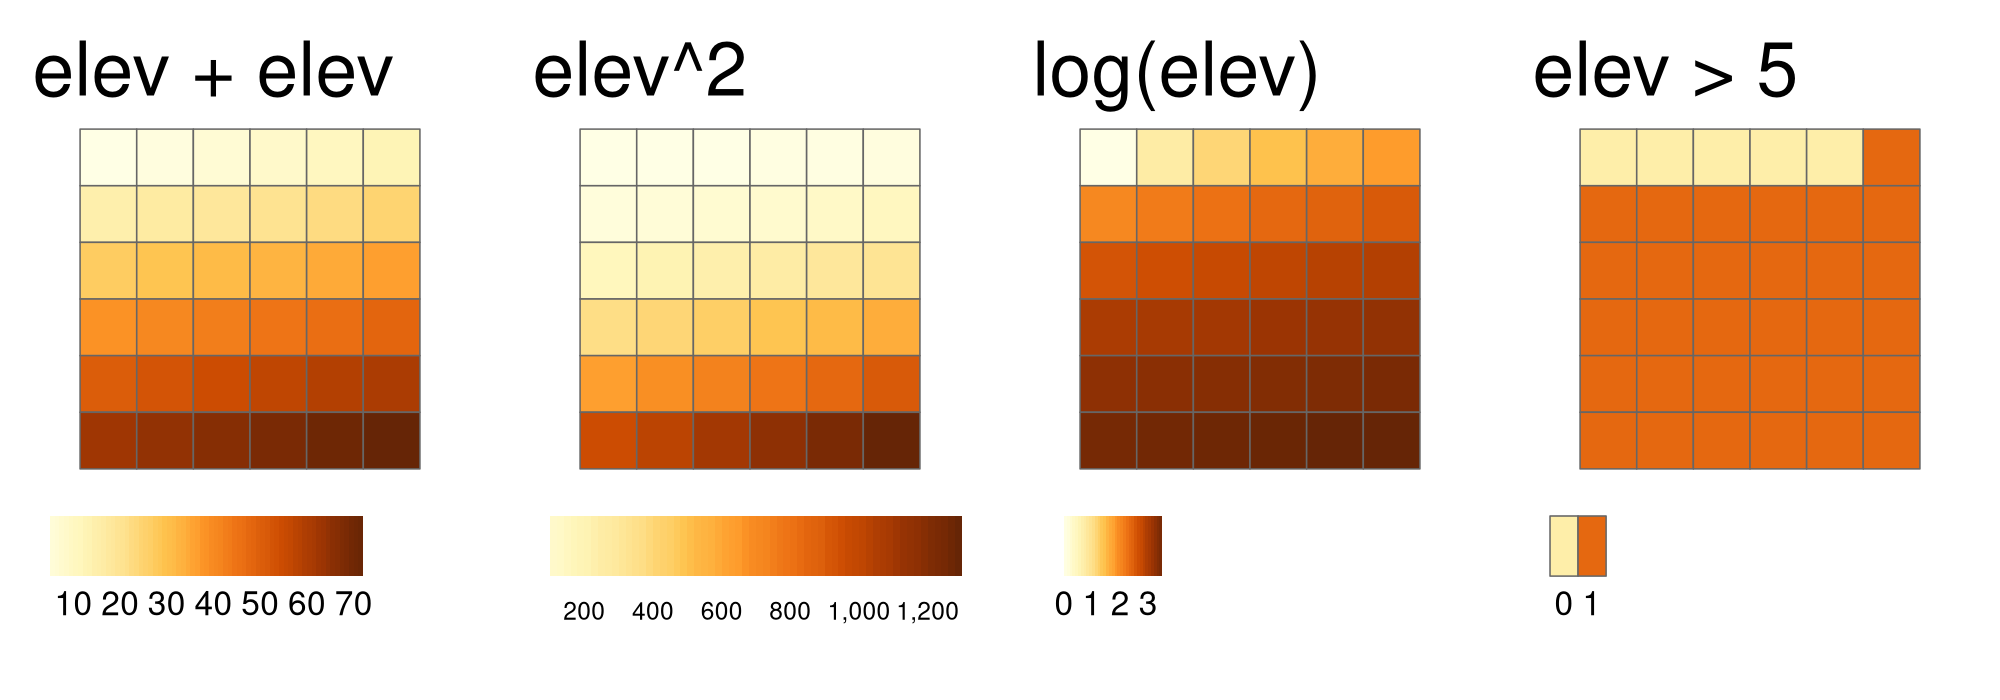 Exemples de différentes opérations locales de l'objet raster elev : additionner deux rasters, élever au carré, appliquer une transformation logarithmique et effectuer une opération logique.